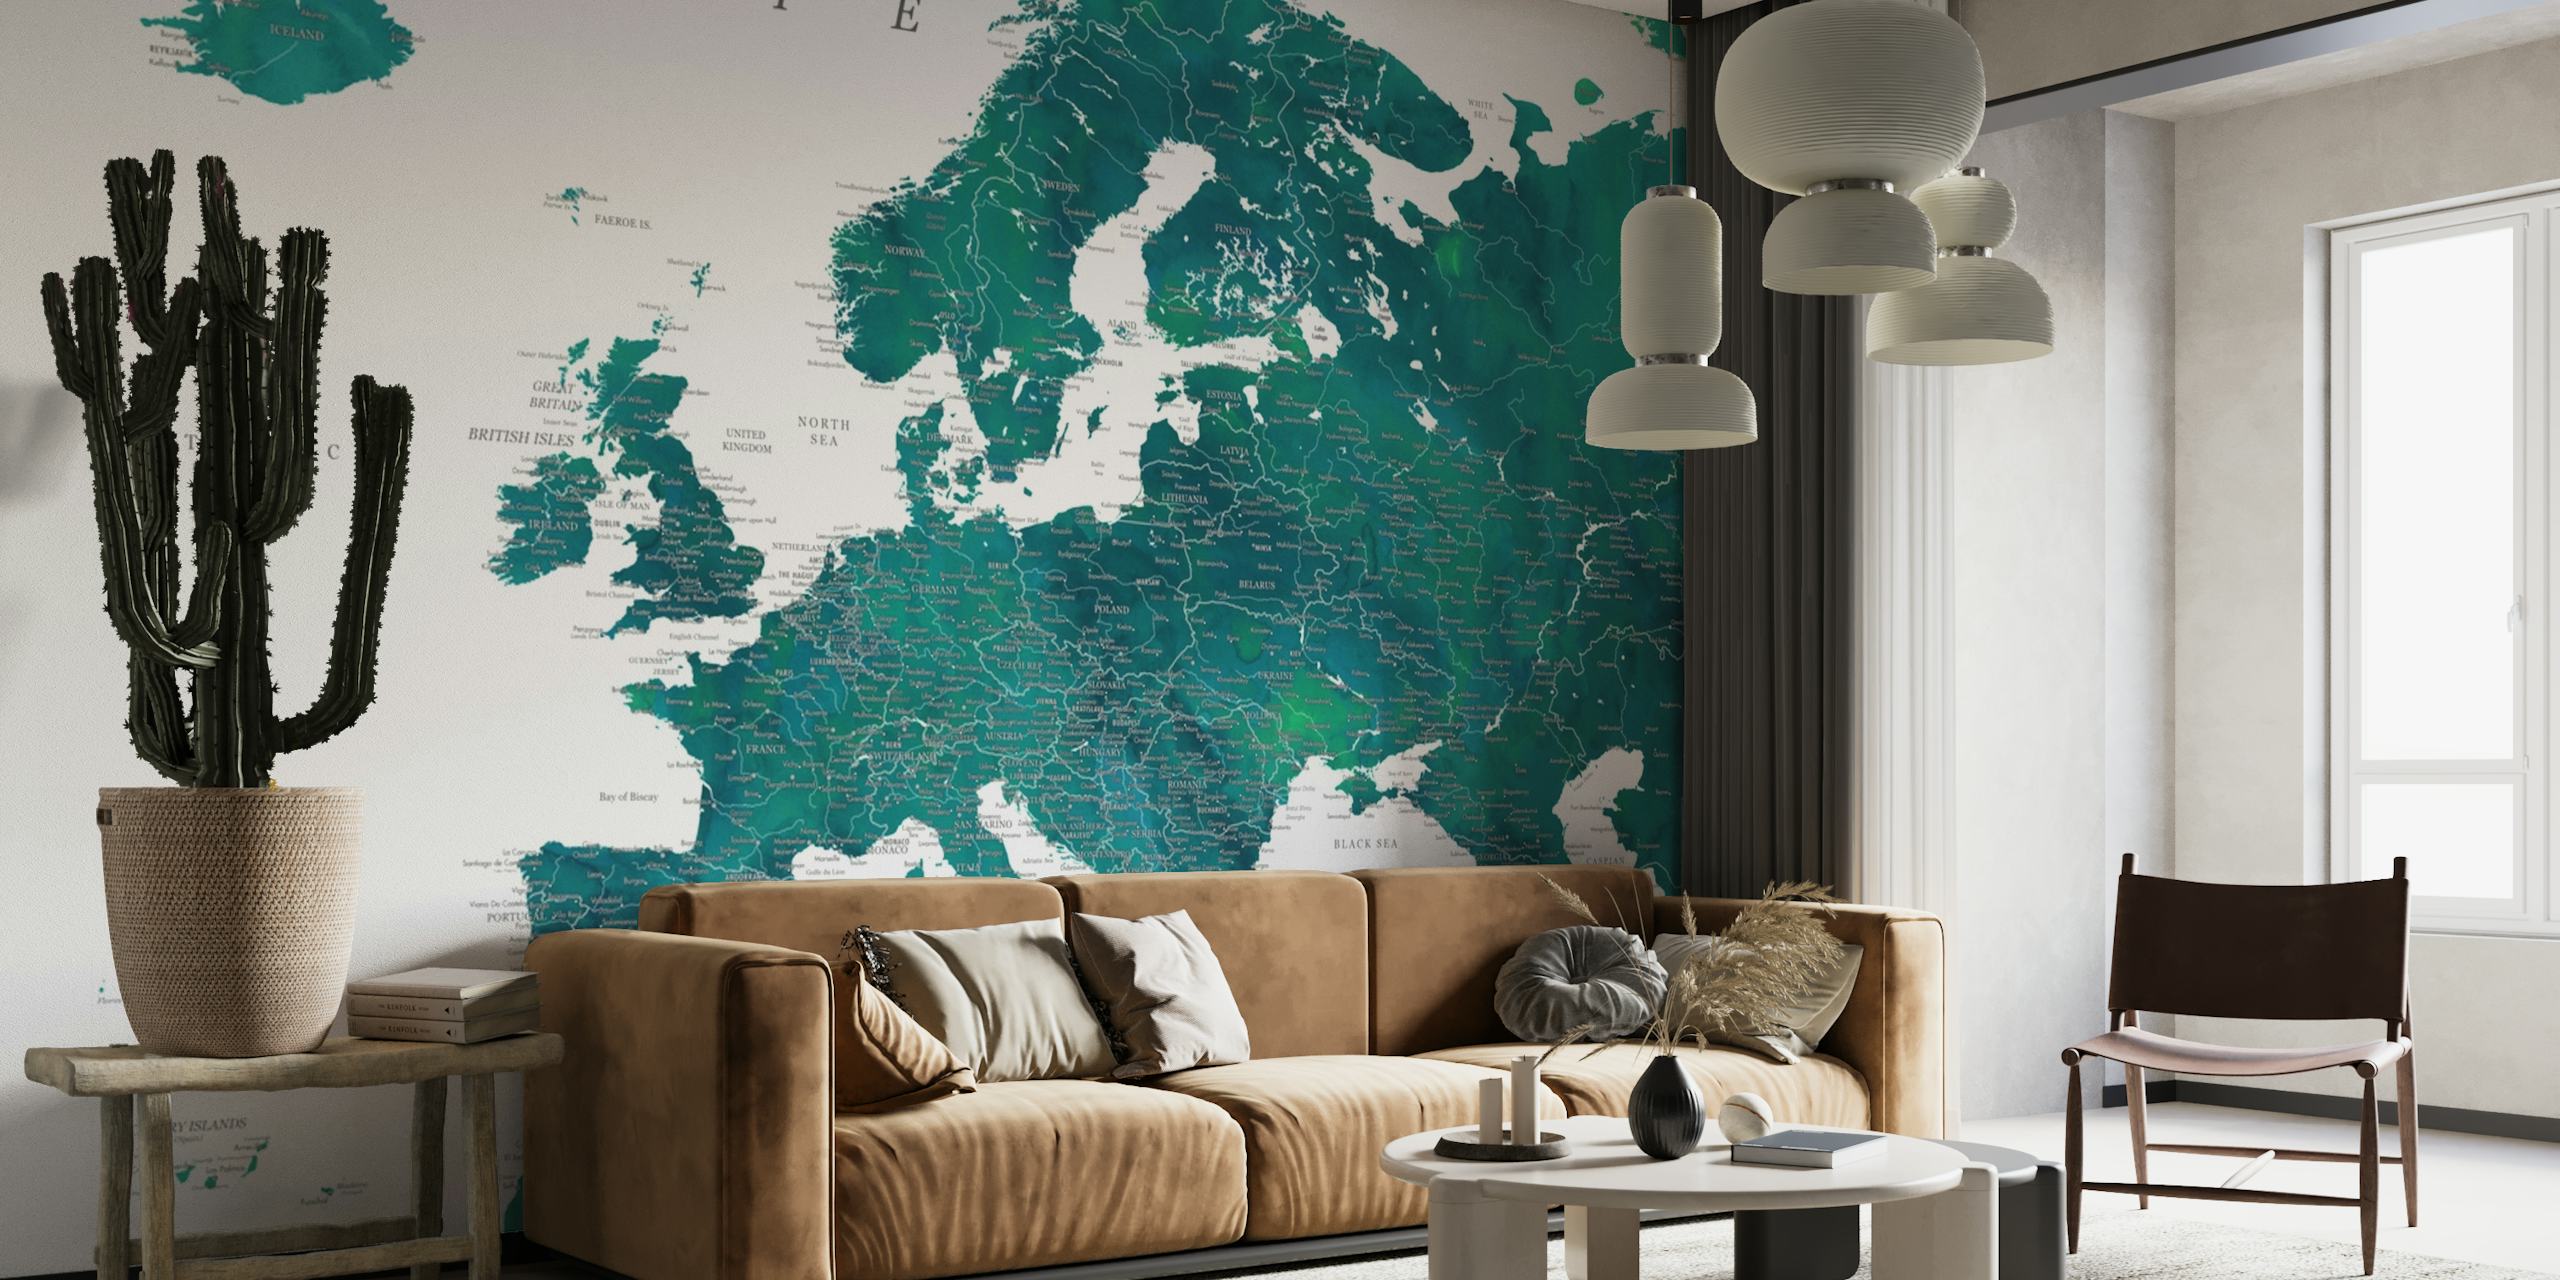 Il murale dettagliato della mappa dell'Europa Nyla mostra colori vivaci e dettagli geografici